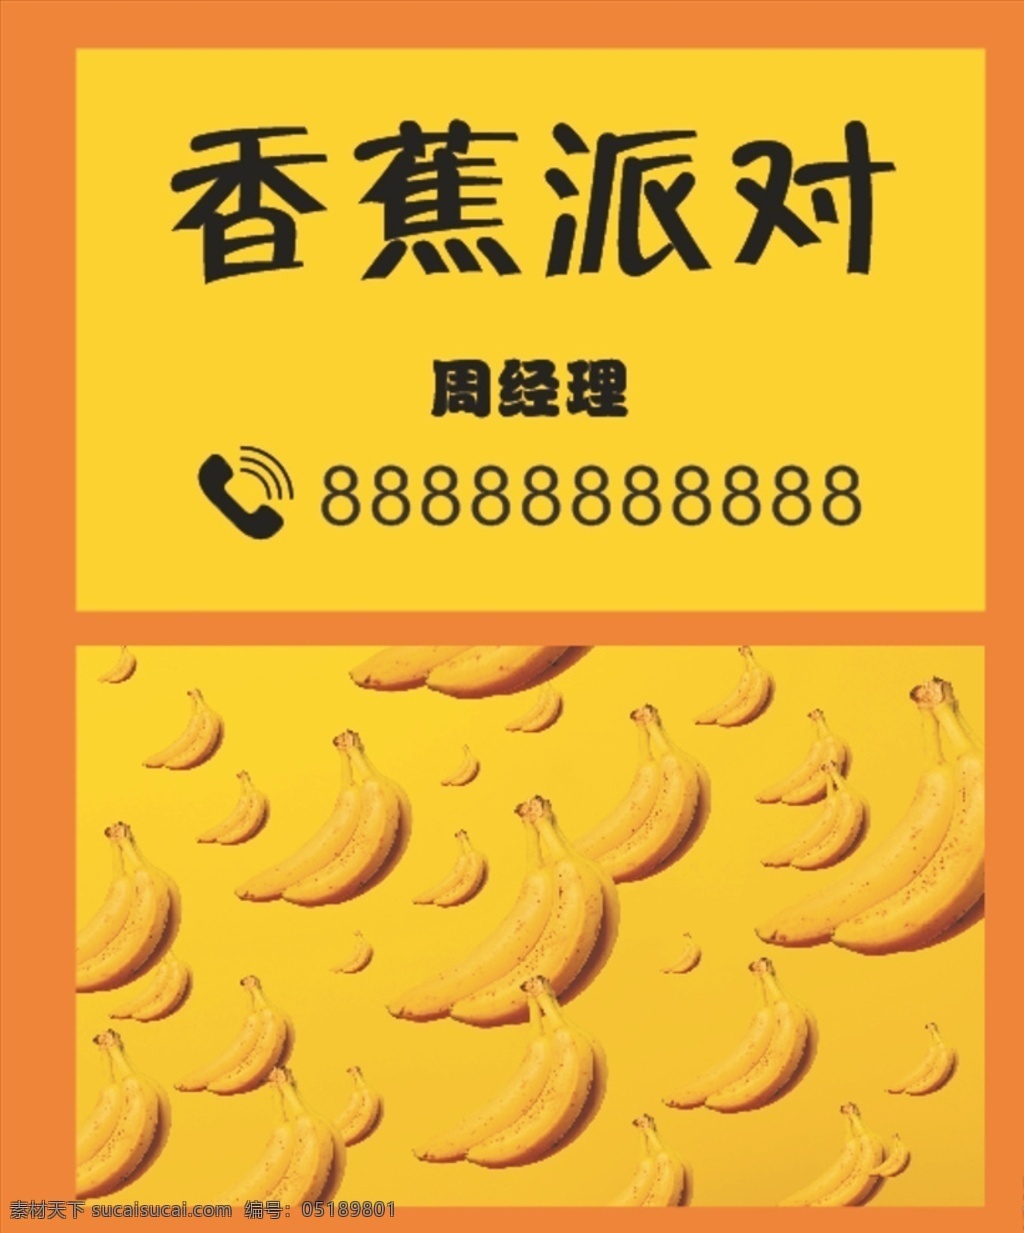 水果名片图片 水果 香蕉 名片 鲜艳 橙色 免费 名片卡片